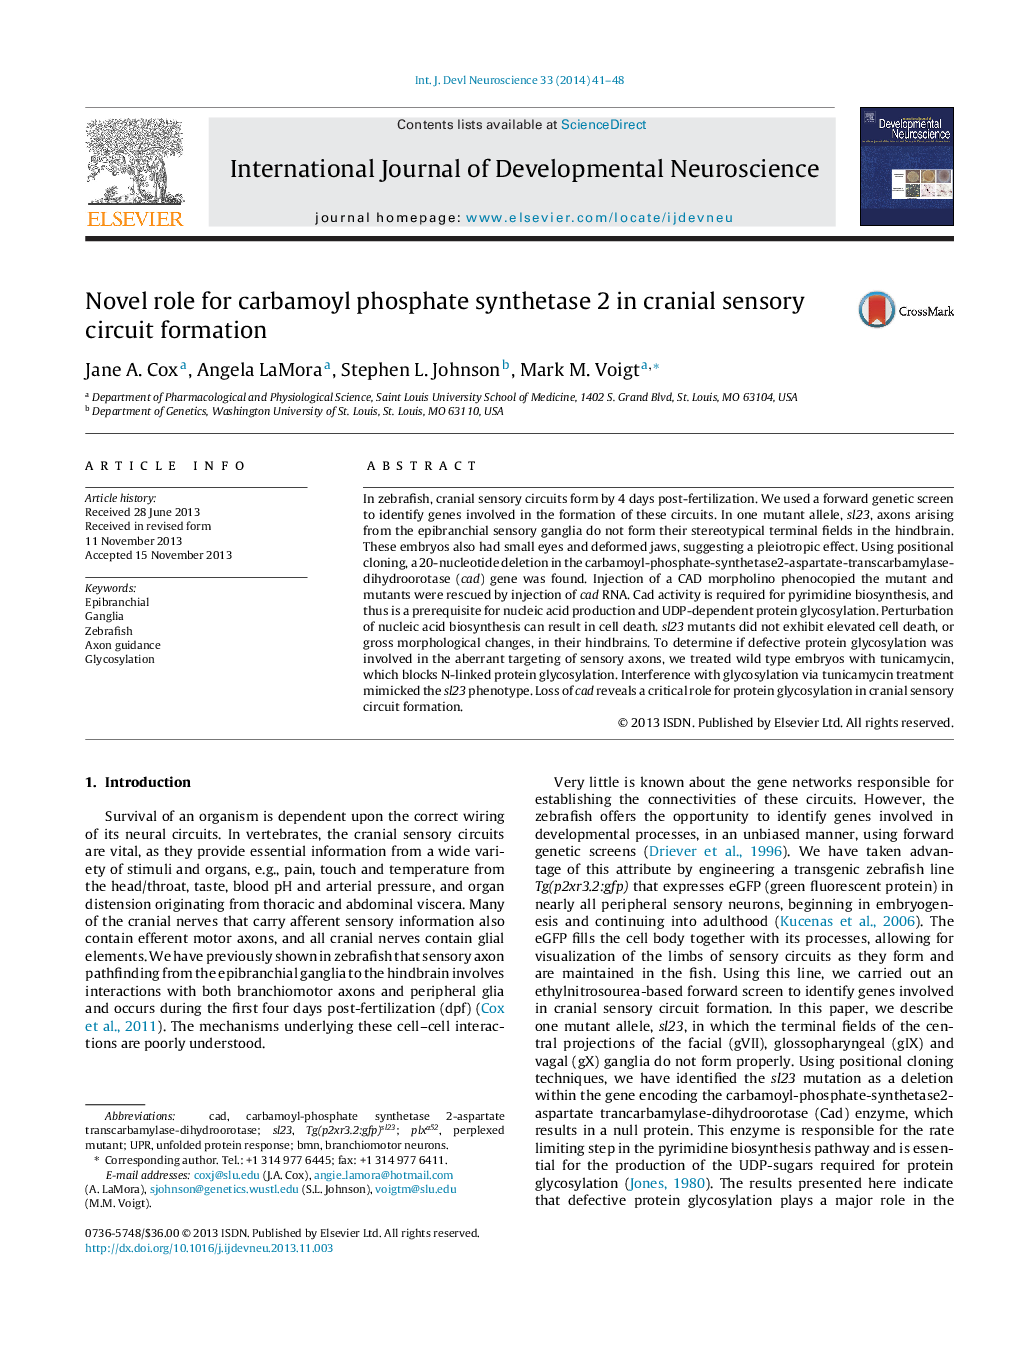 نقش روان برای کارباموییل فسفات سنتتاز 2 در تشکیل مدار حسی جمجمه 